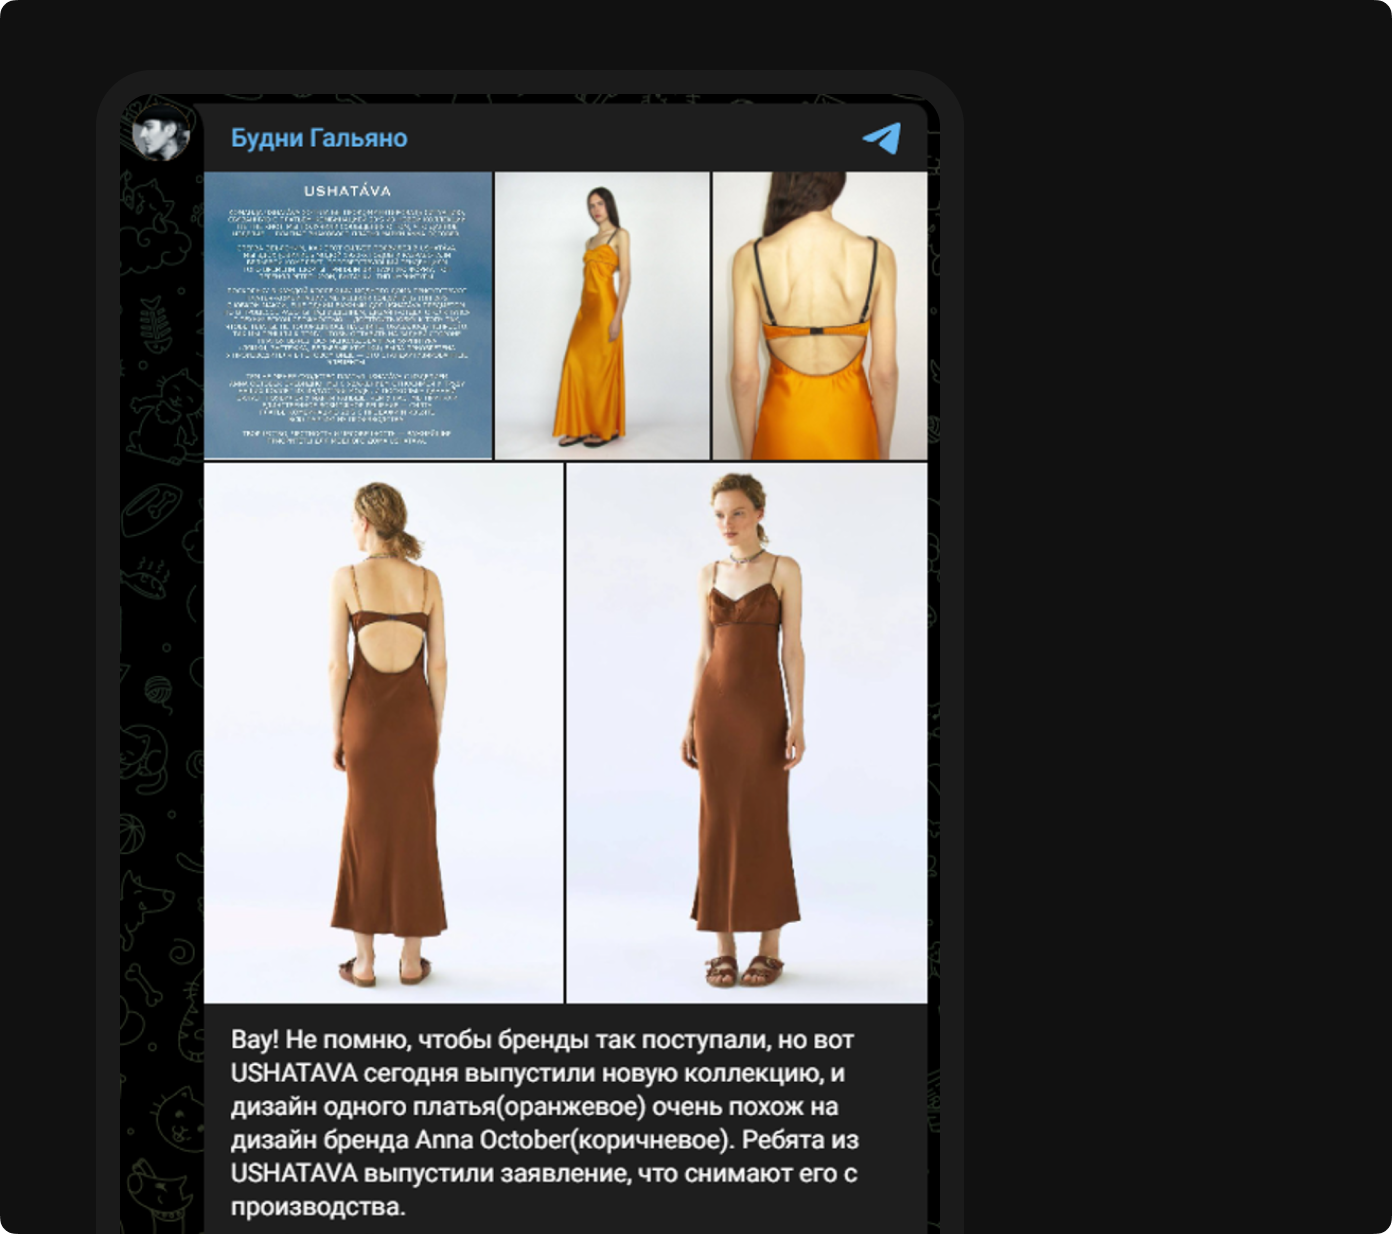 Красивым поступком недавно отметился бренд USHATAVA, который после замечаний на тему сходства их платья с моделью другого бренда честно выступил с объяснением и убрал платье из коллекции